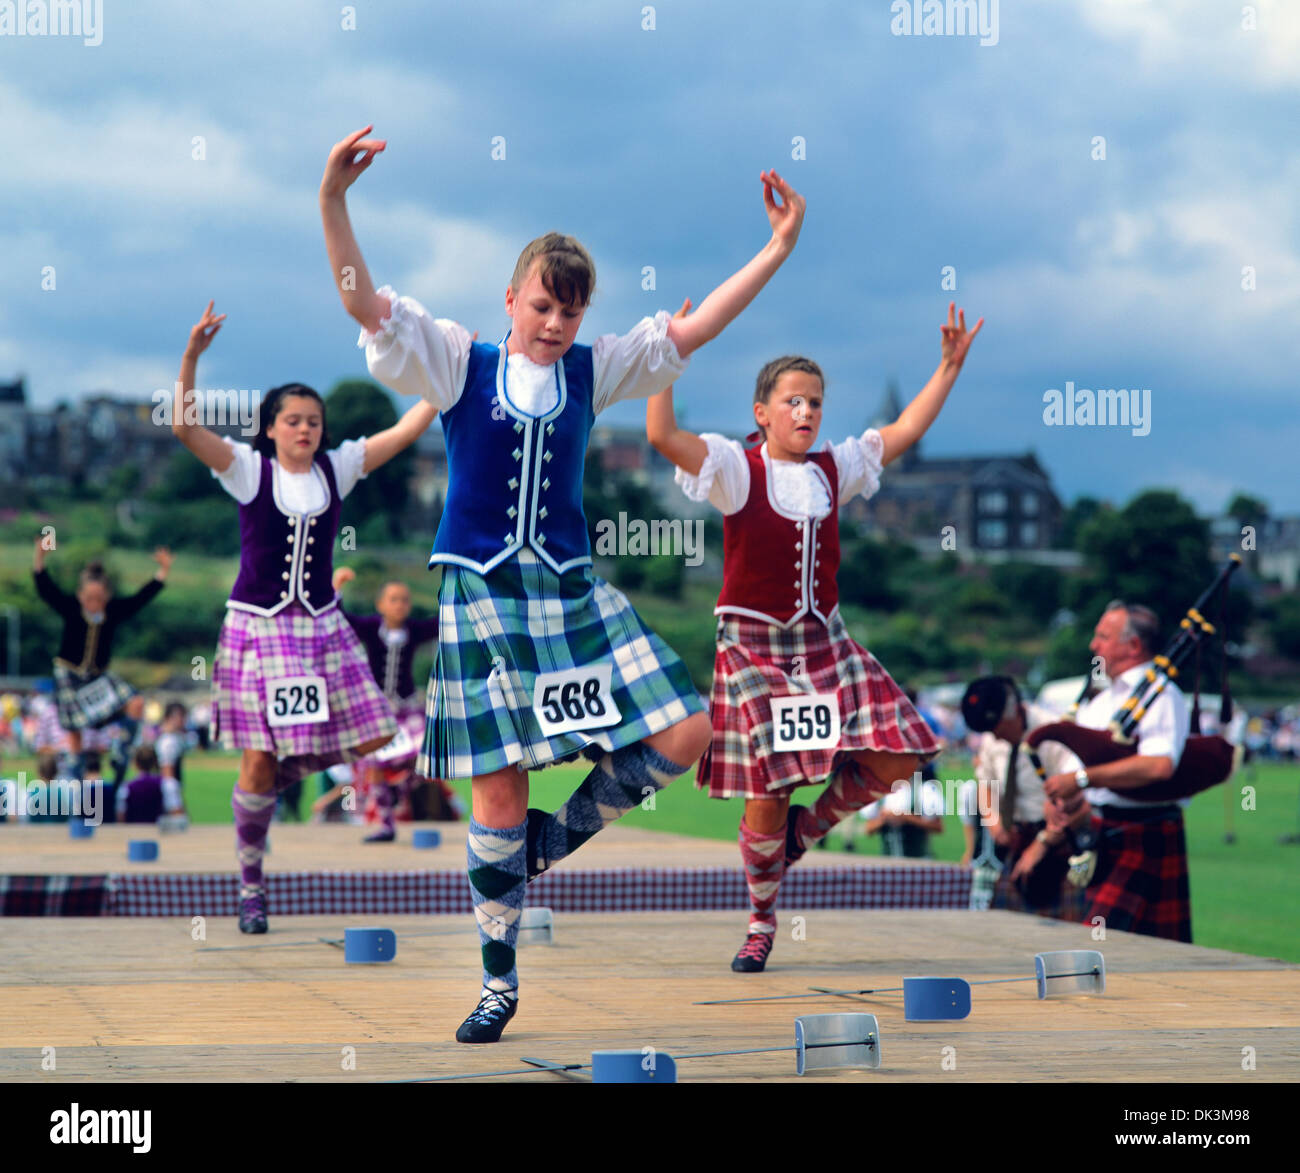 Scottish Dancing Banque d'image et photos - Alamy